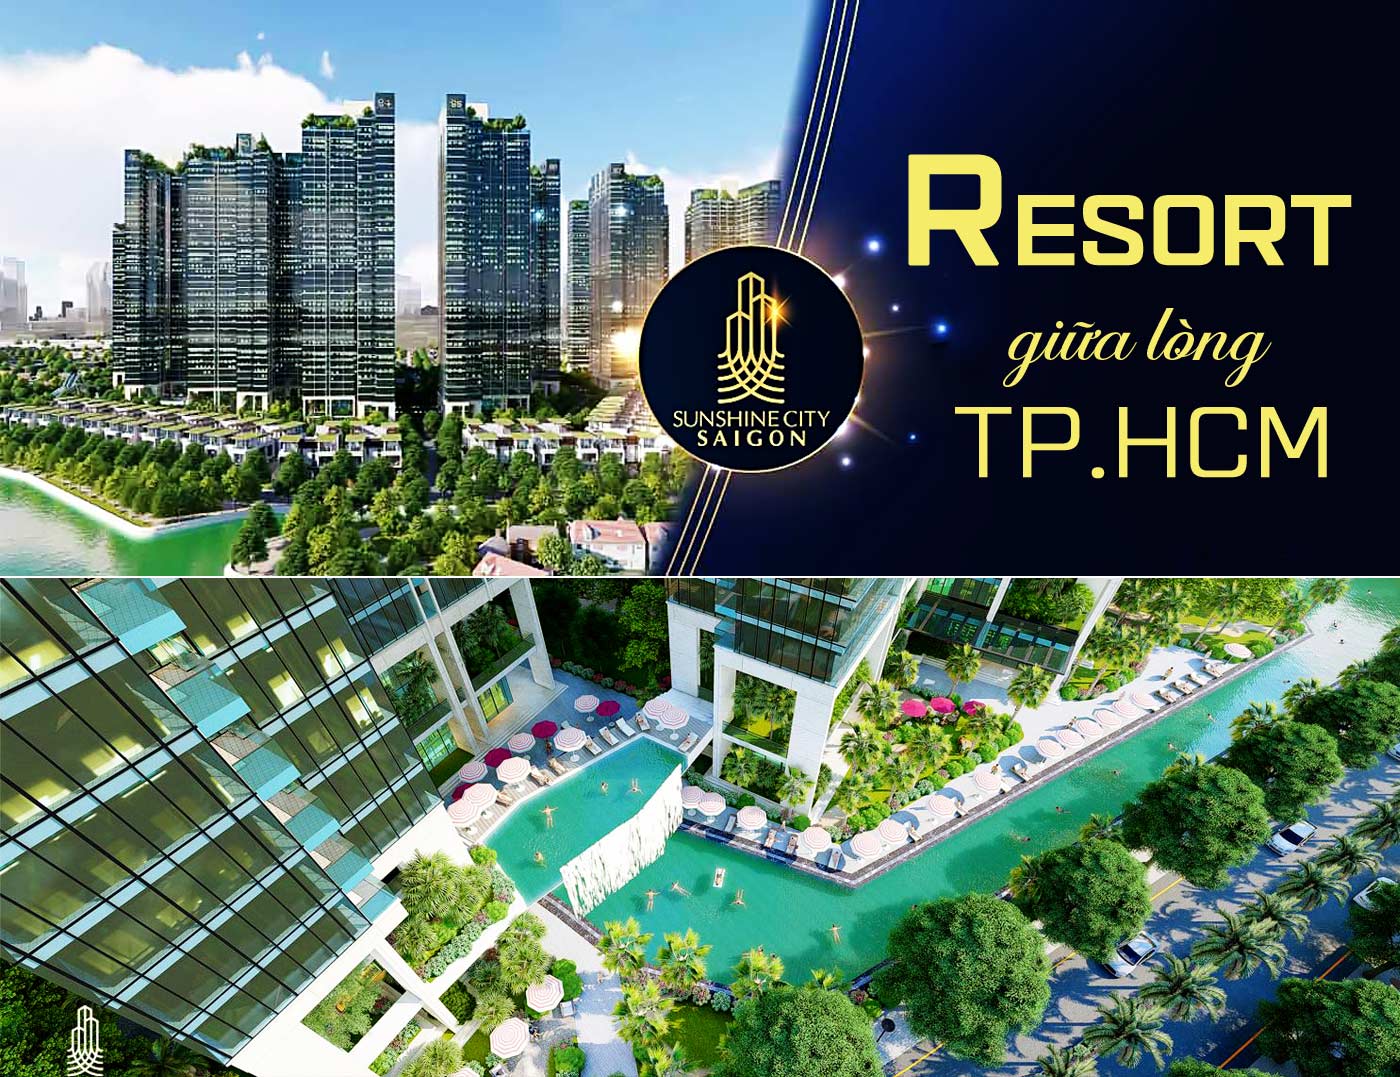 Sunshine City Sài Gòn - Resort giữa lòng TP.HCM - Ảnh 1